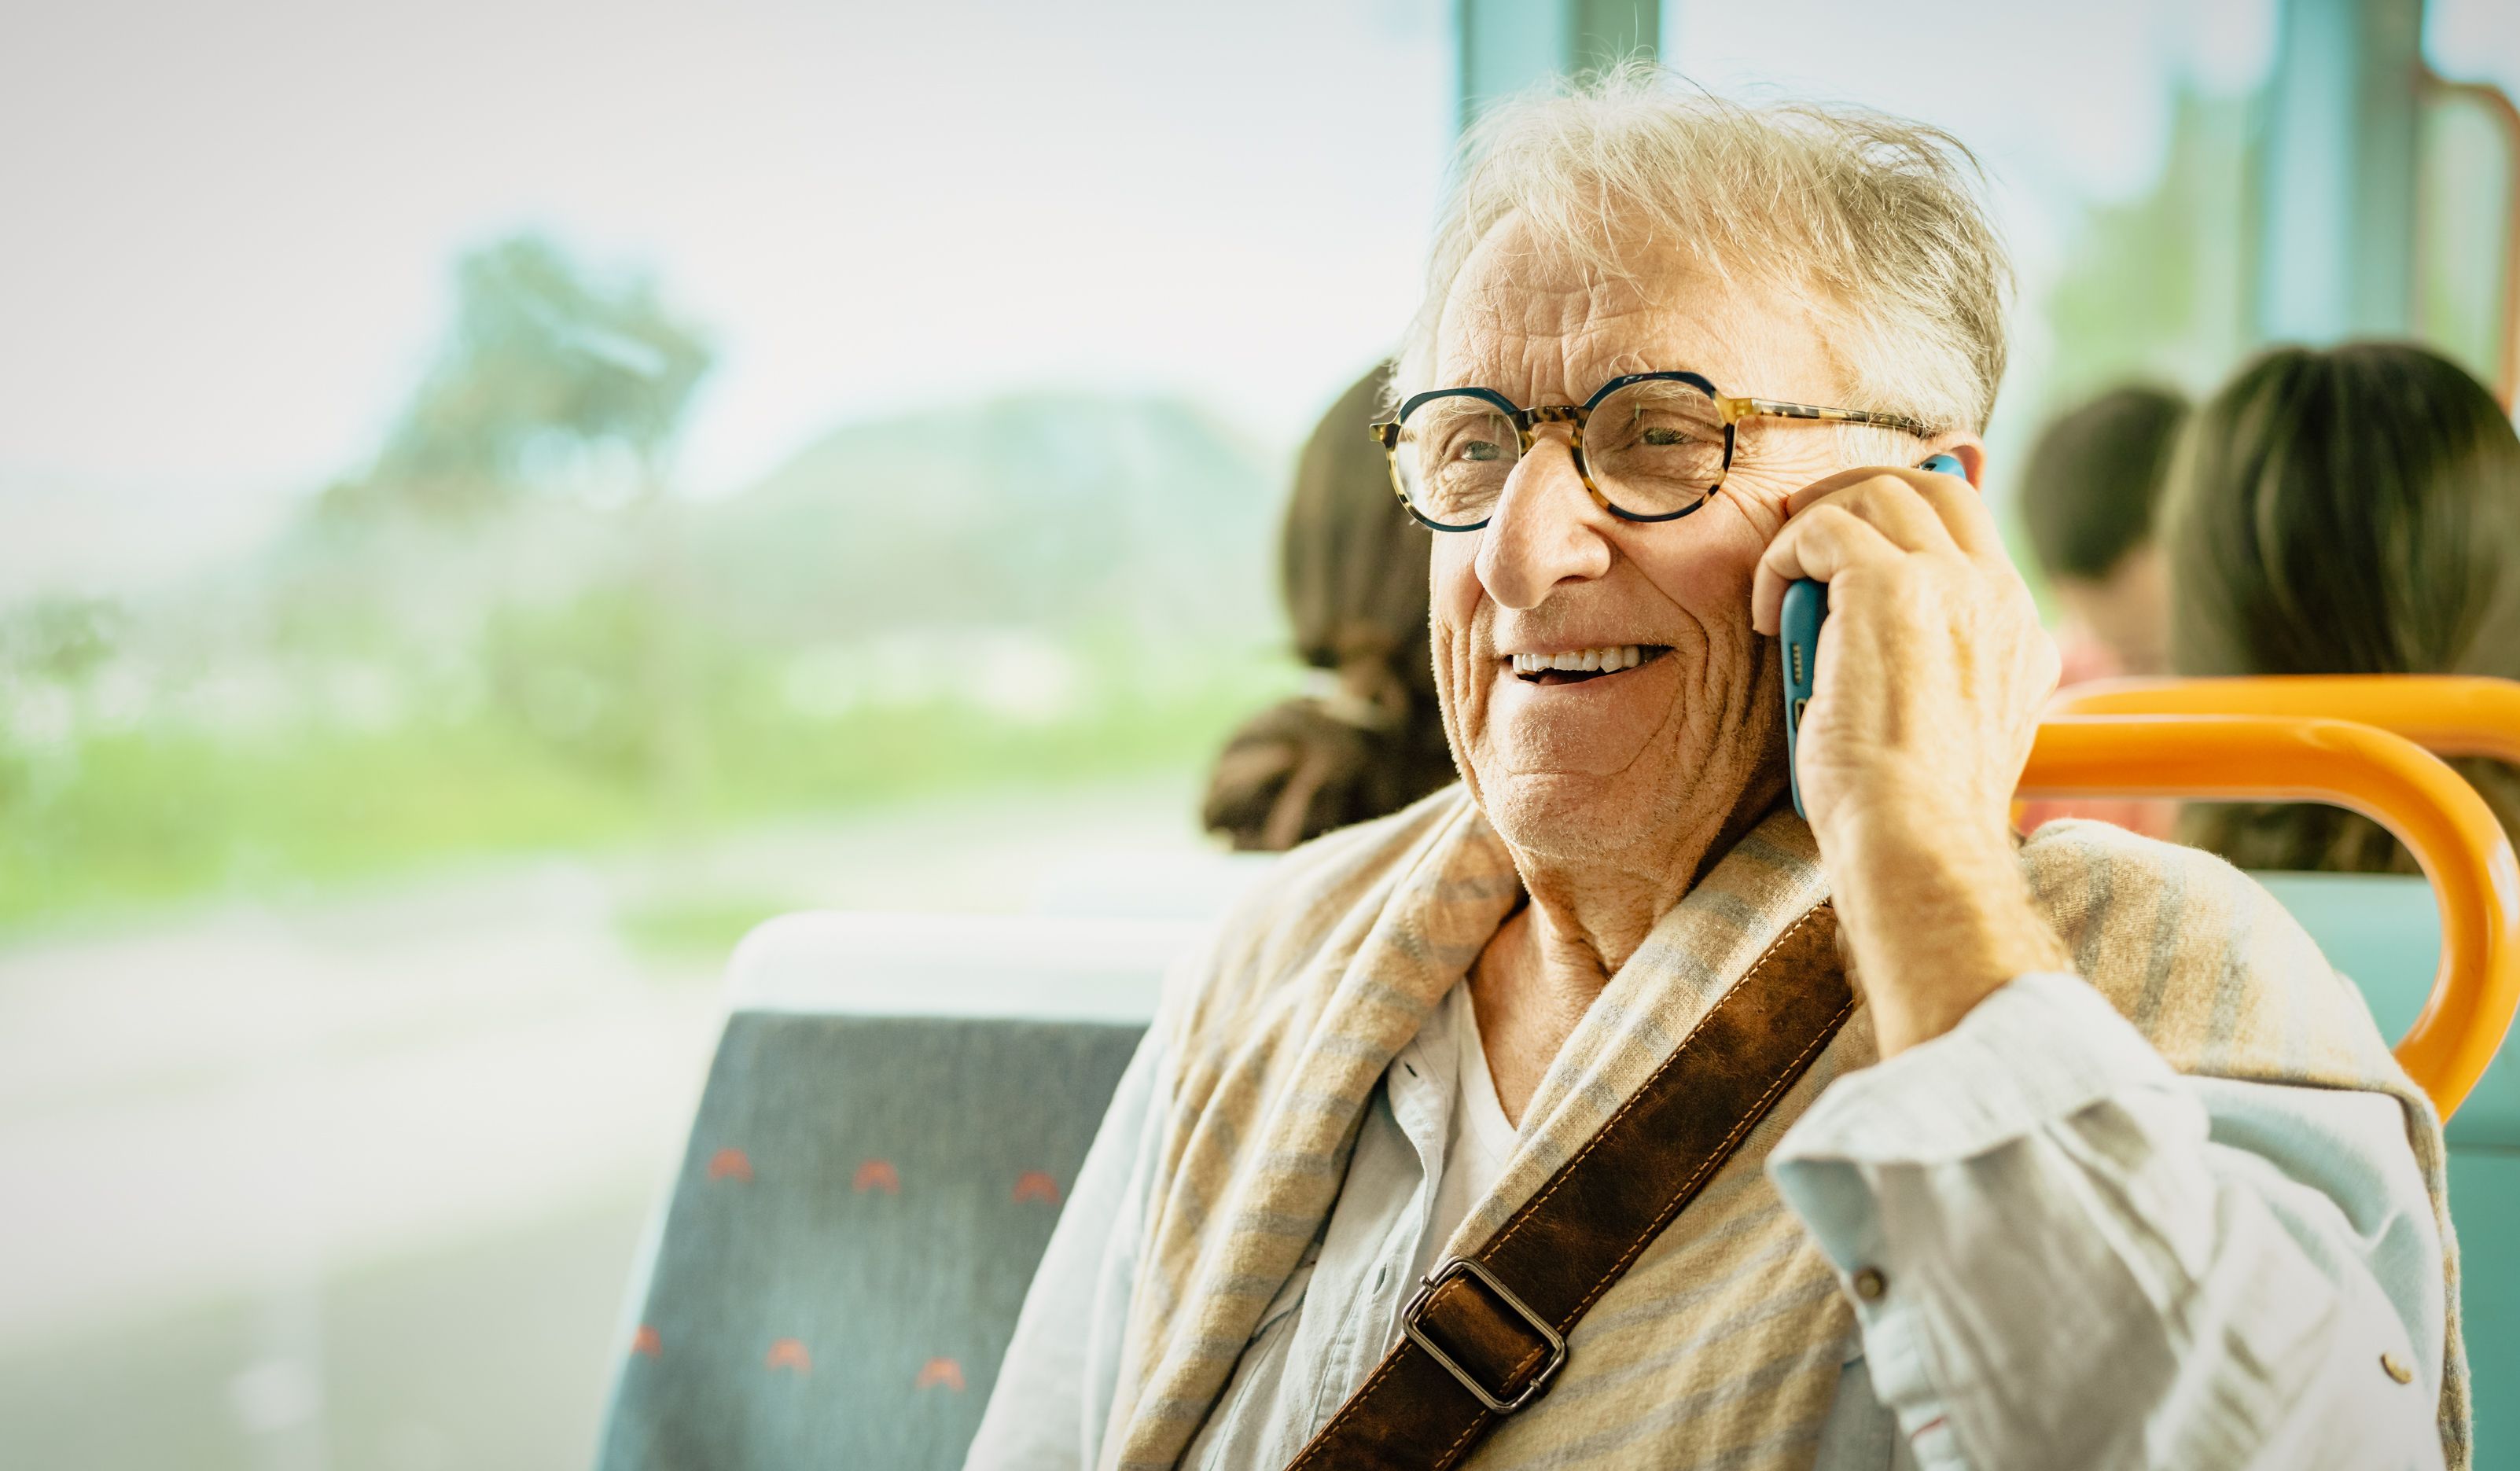 Los autobuses interurbanos de Galicia serán gratis para los mayores de 65 años desde 2024. Foto: Bigstock